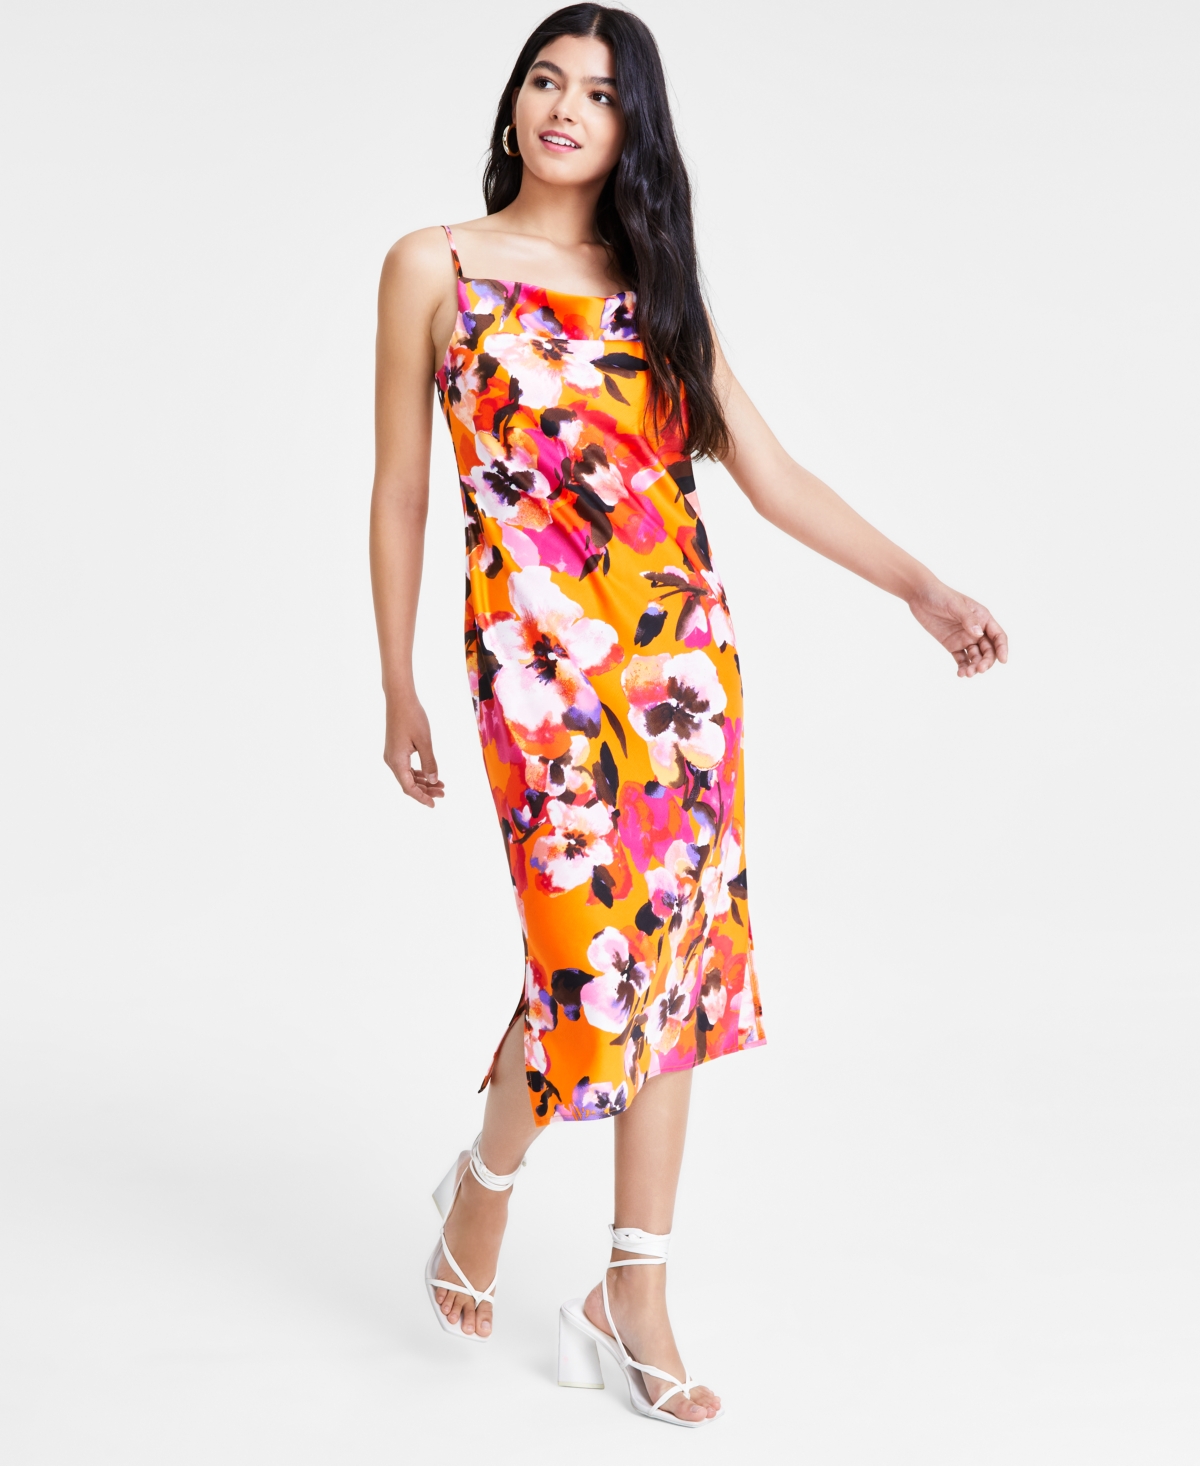 Women's Sleeveless Cowl Neck Shift Dress, Created for Macy's - Tangerine